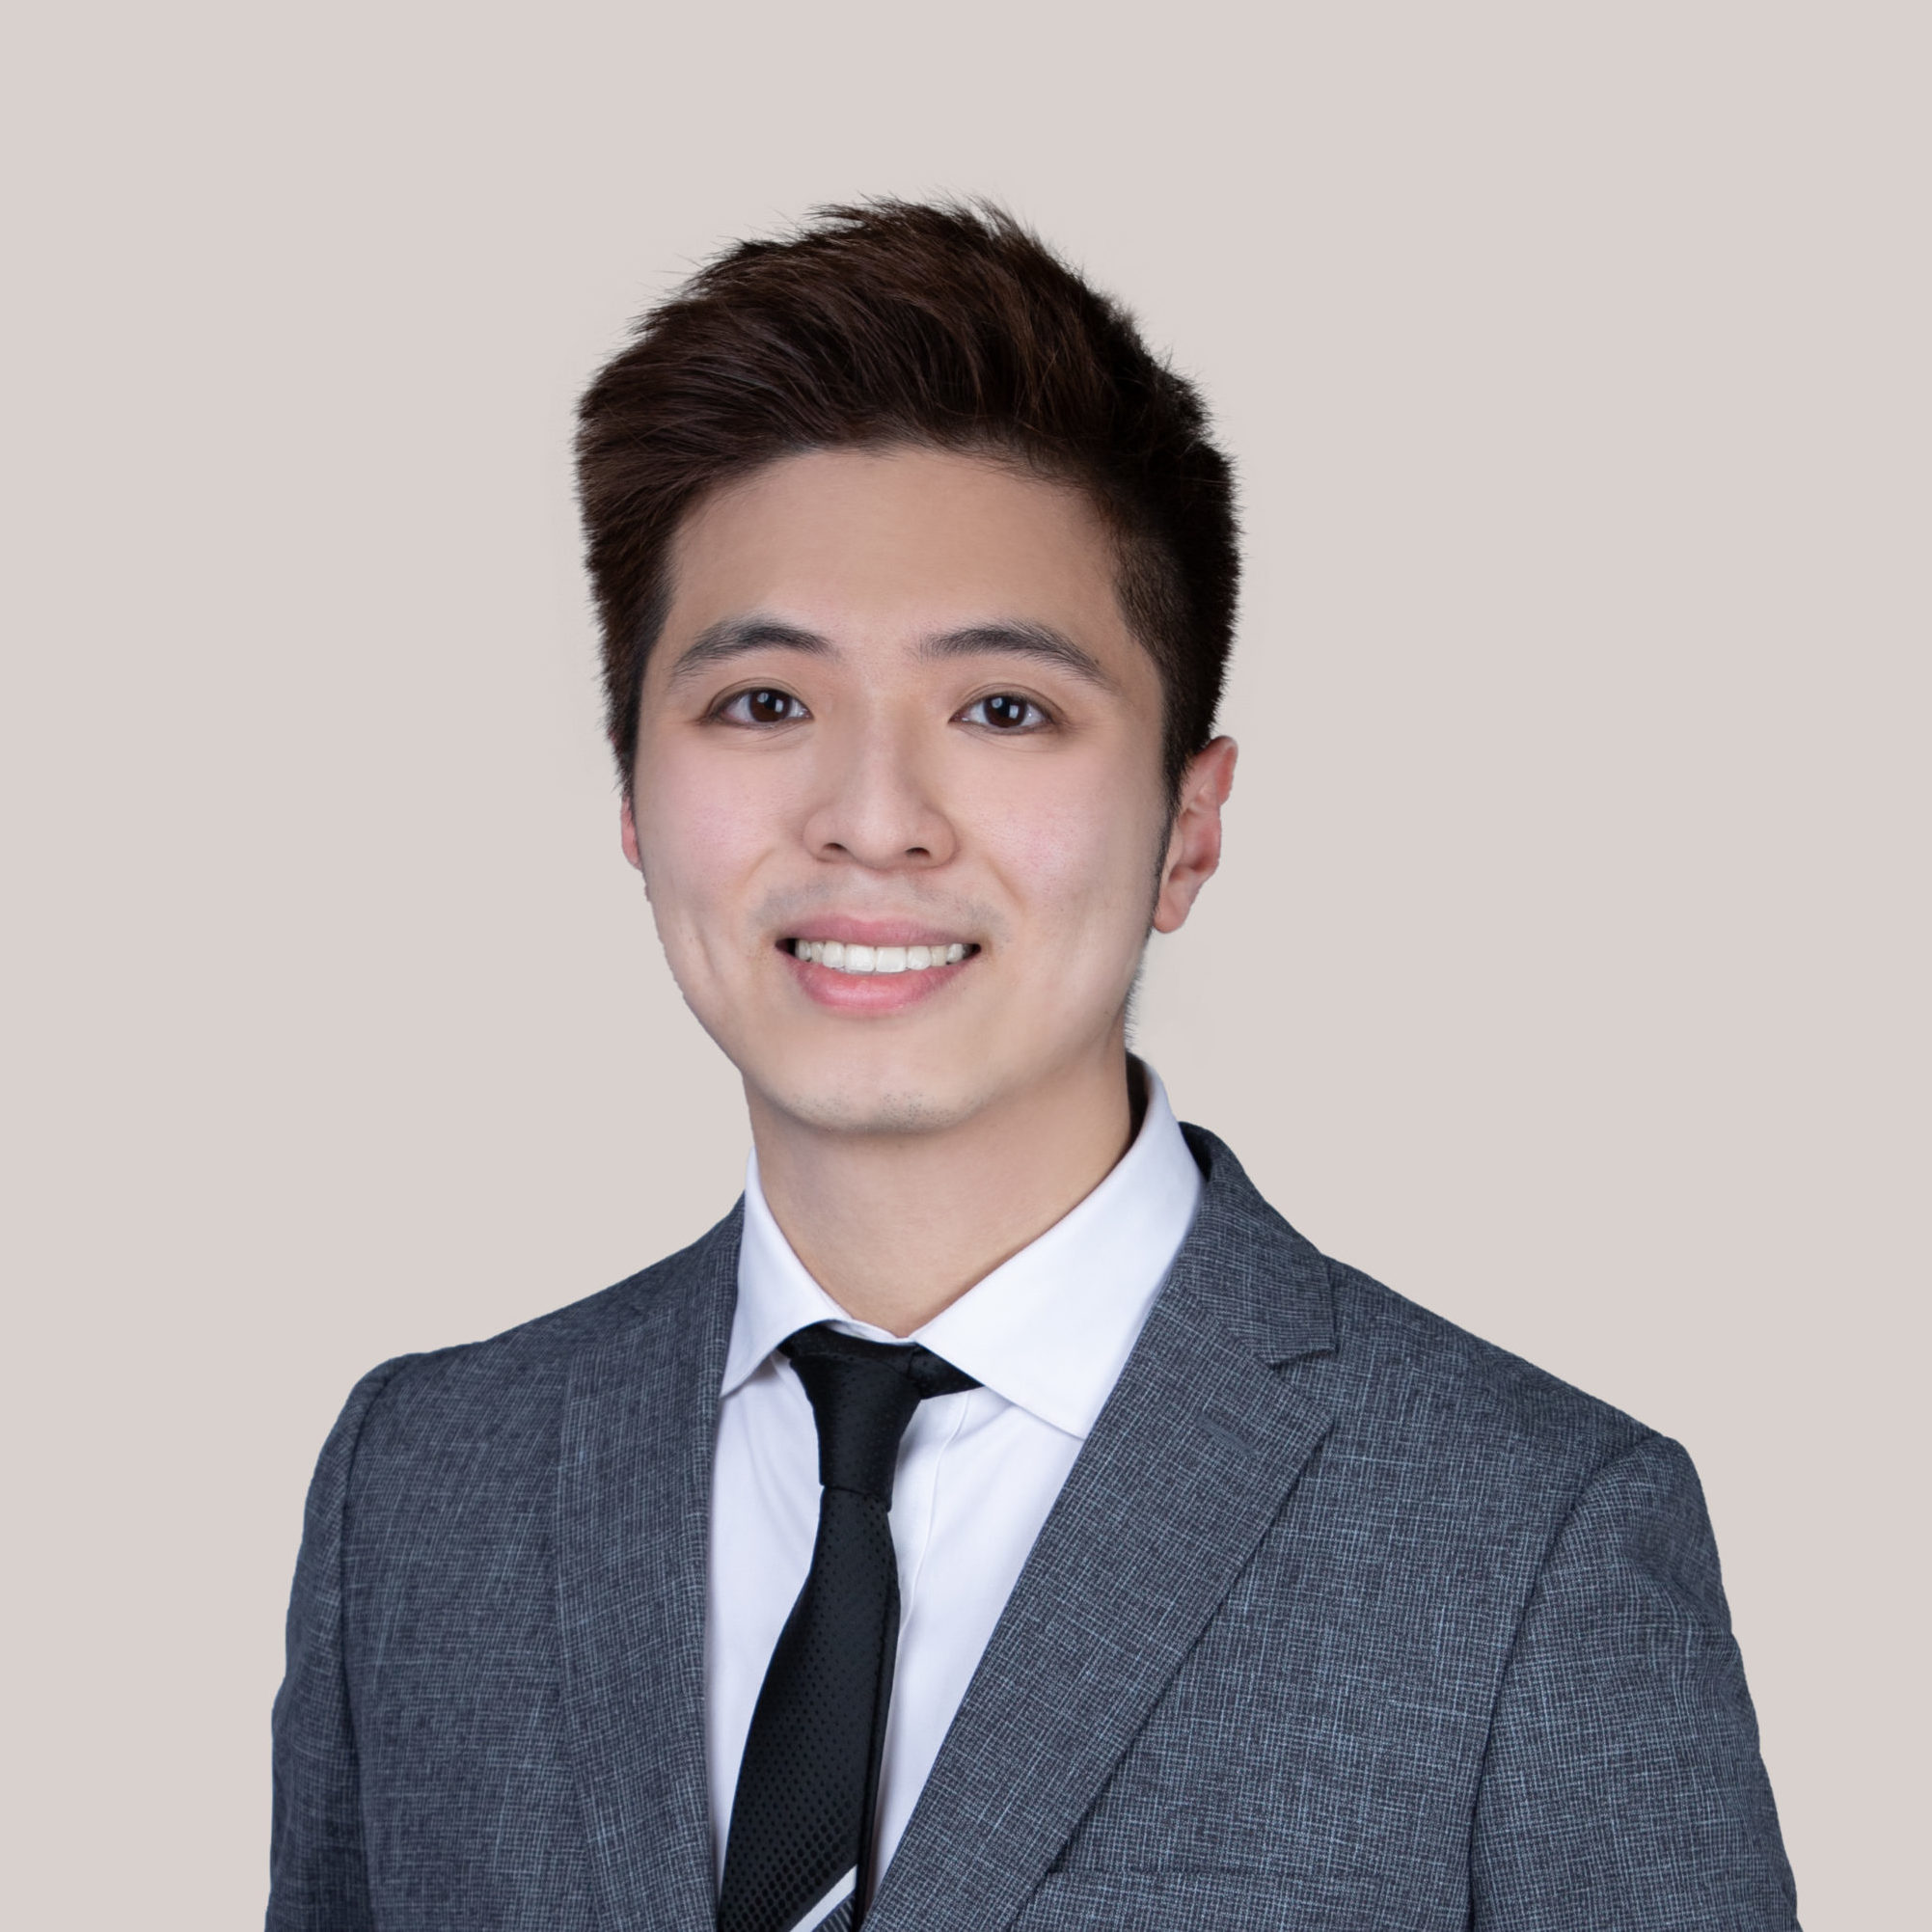 Ivan Lee - Family Lawyer at Oldham, Li & Nie, Hong Kong